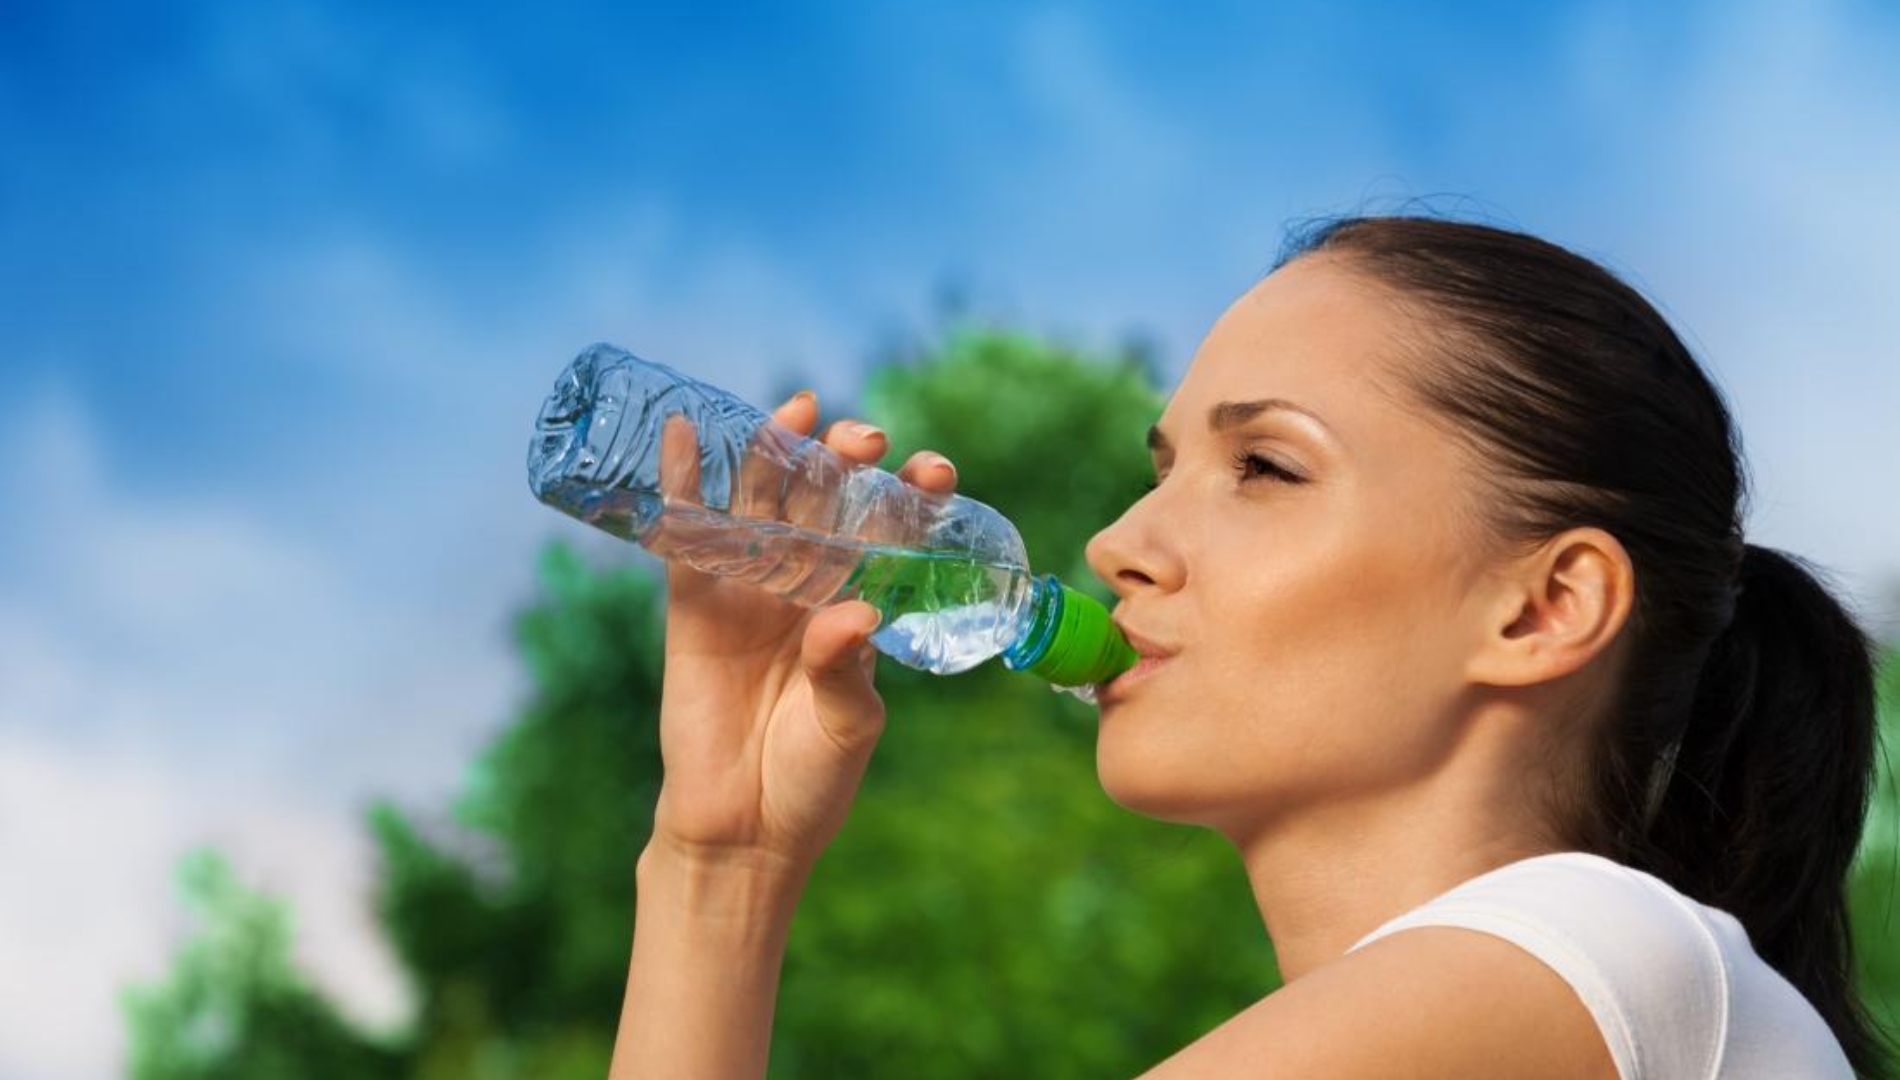 Пейте легкую воду. Человек пьет воду. Питье воды. Вода и человек. Здоровый образ жизни вода.